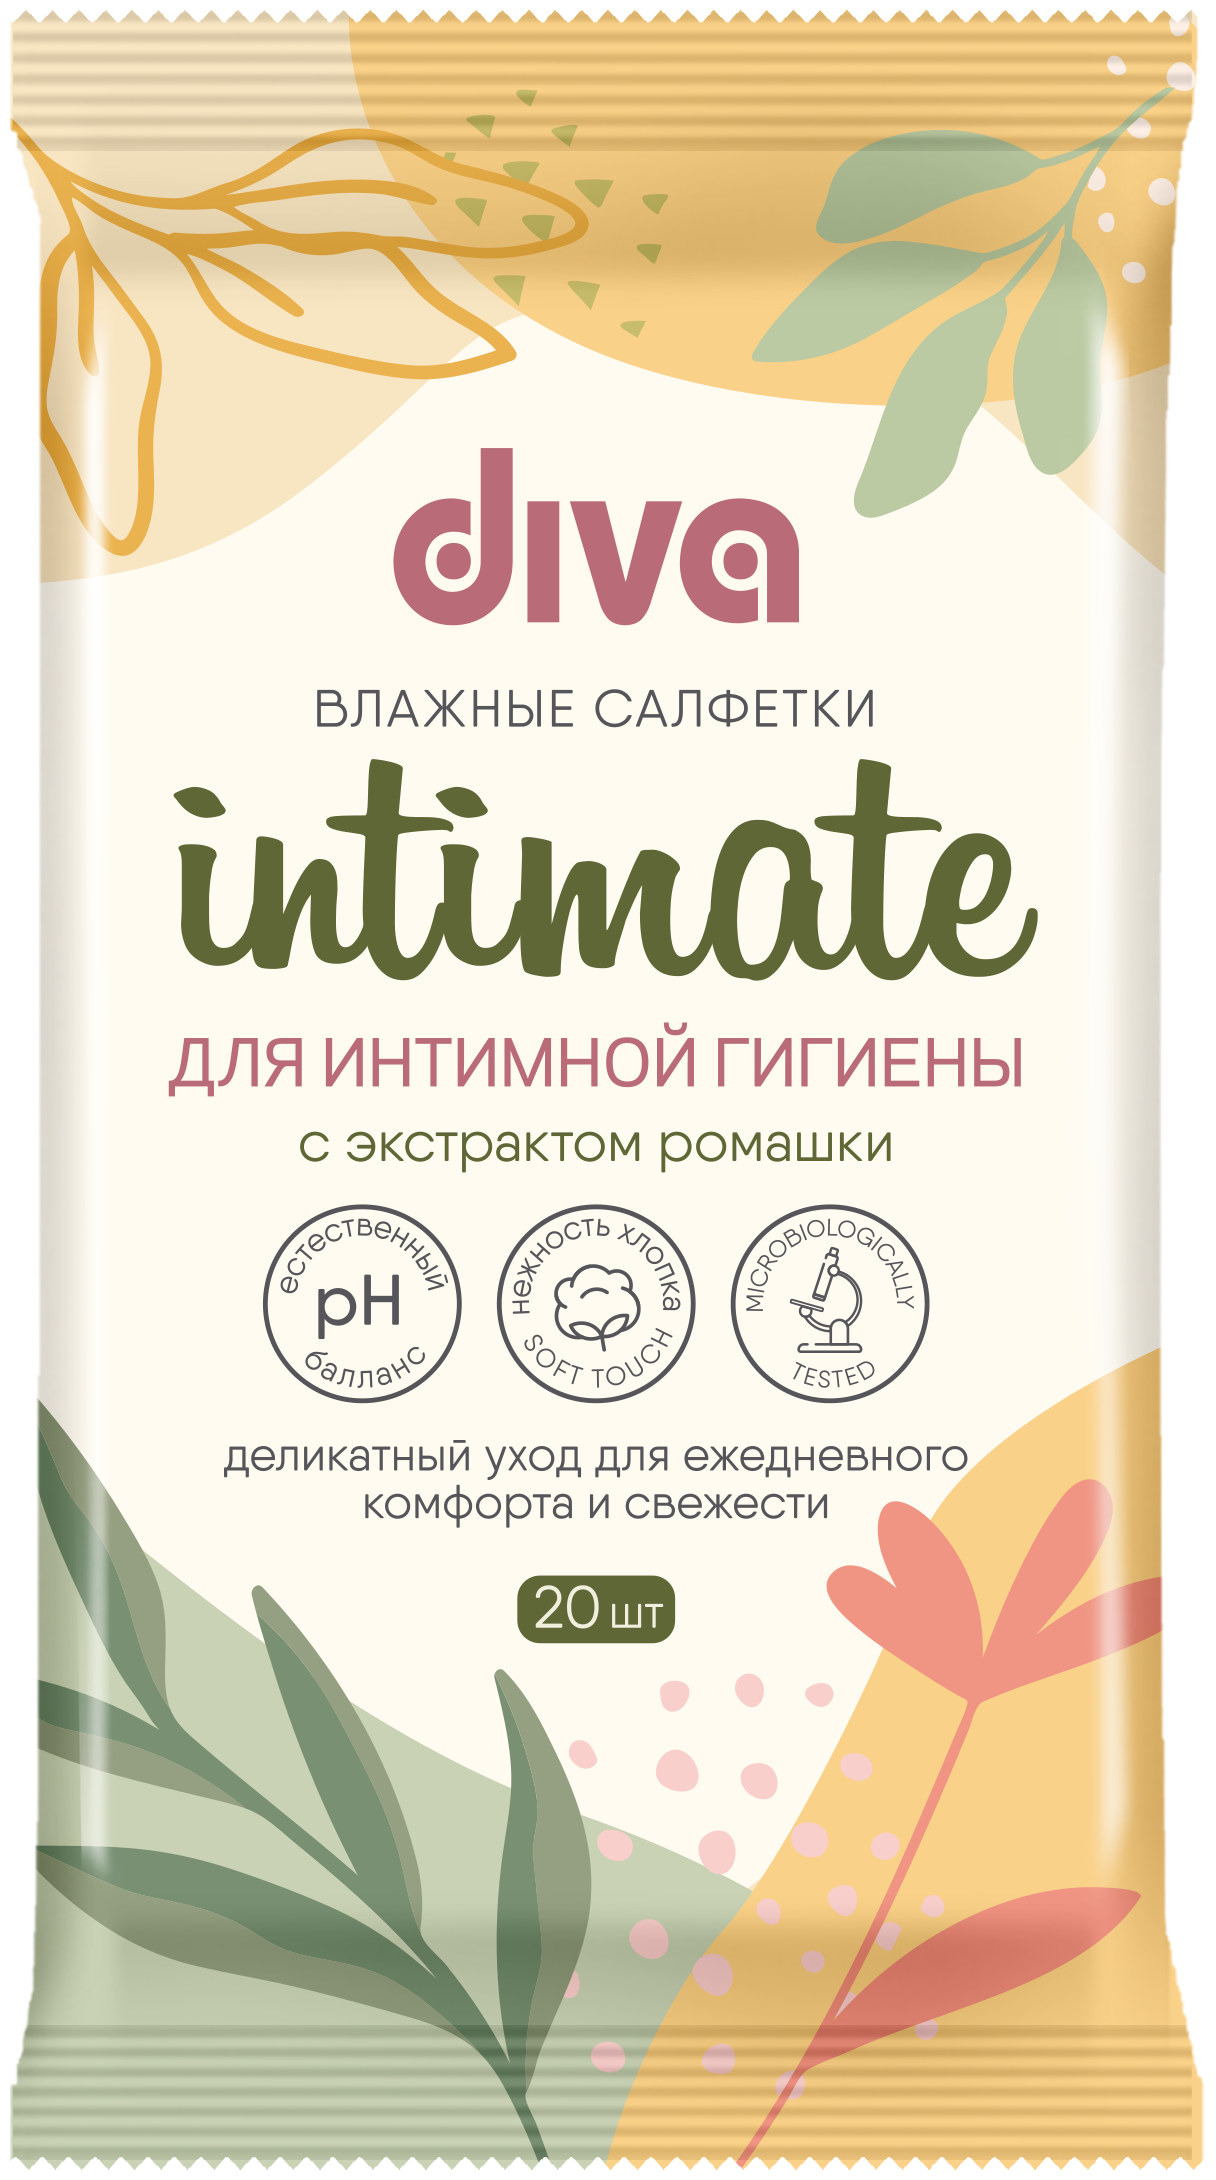 DIVA intimate c экстрактом ромашки № 20 влажные салфетки для интимной гигиены